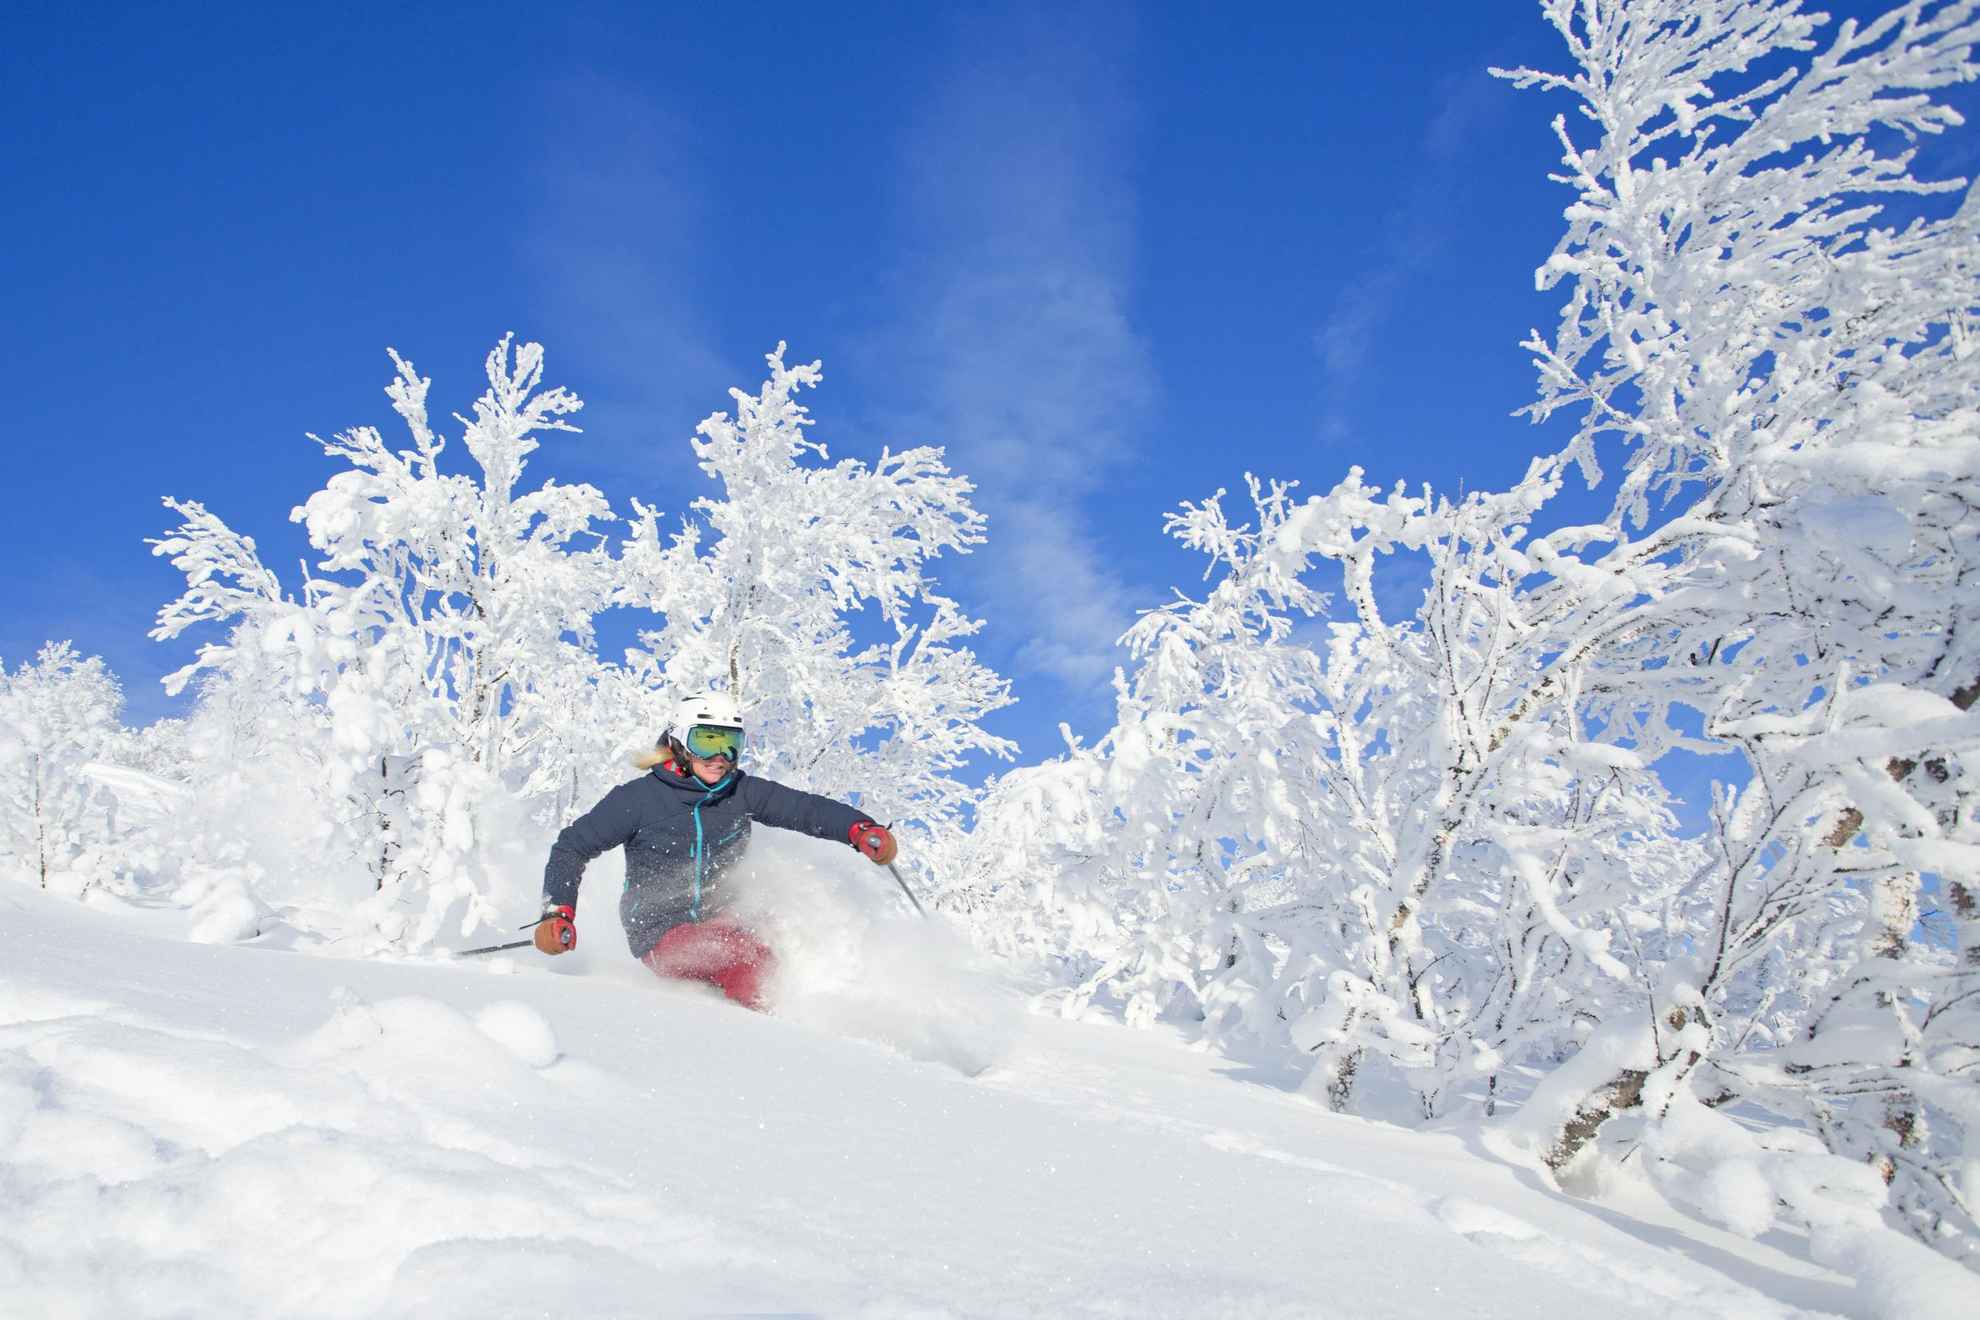 Eine Frau fährt abseits der Pisten Ski. Der Boden und die Bäume sind mit Schnee bedeckt und der Himmel ist blau.